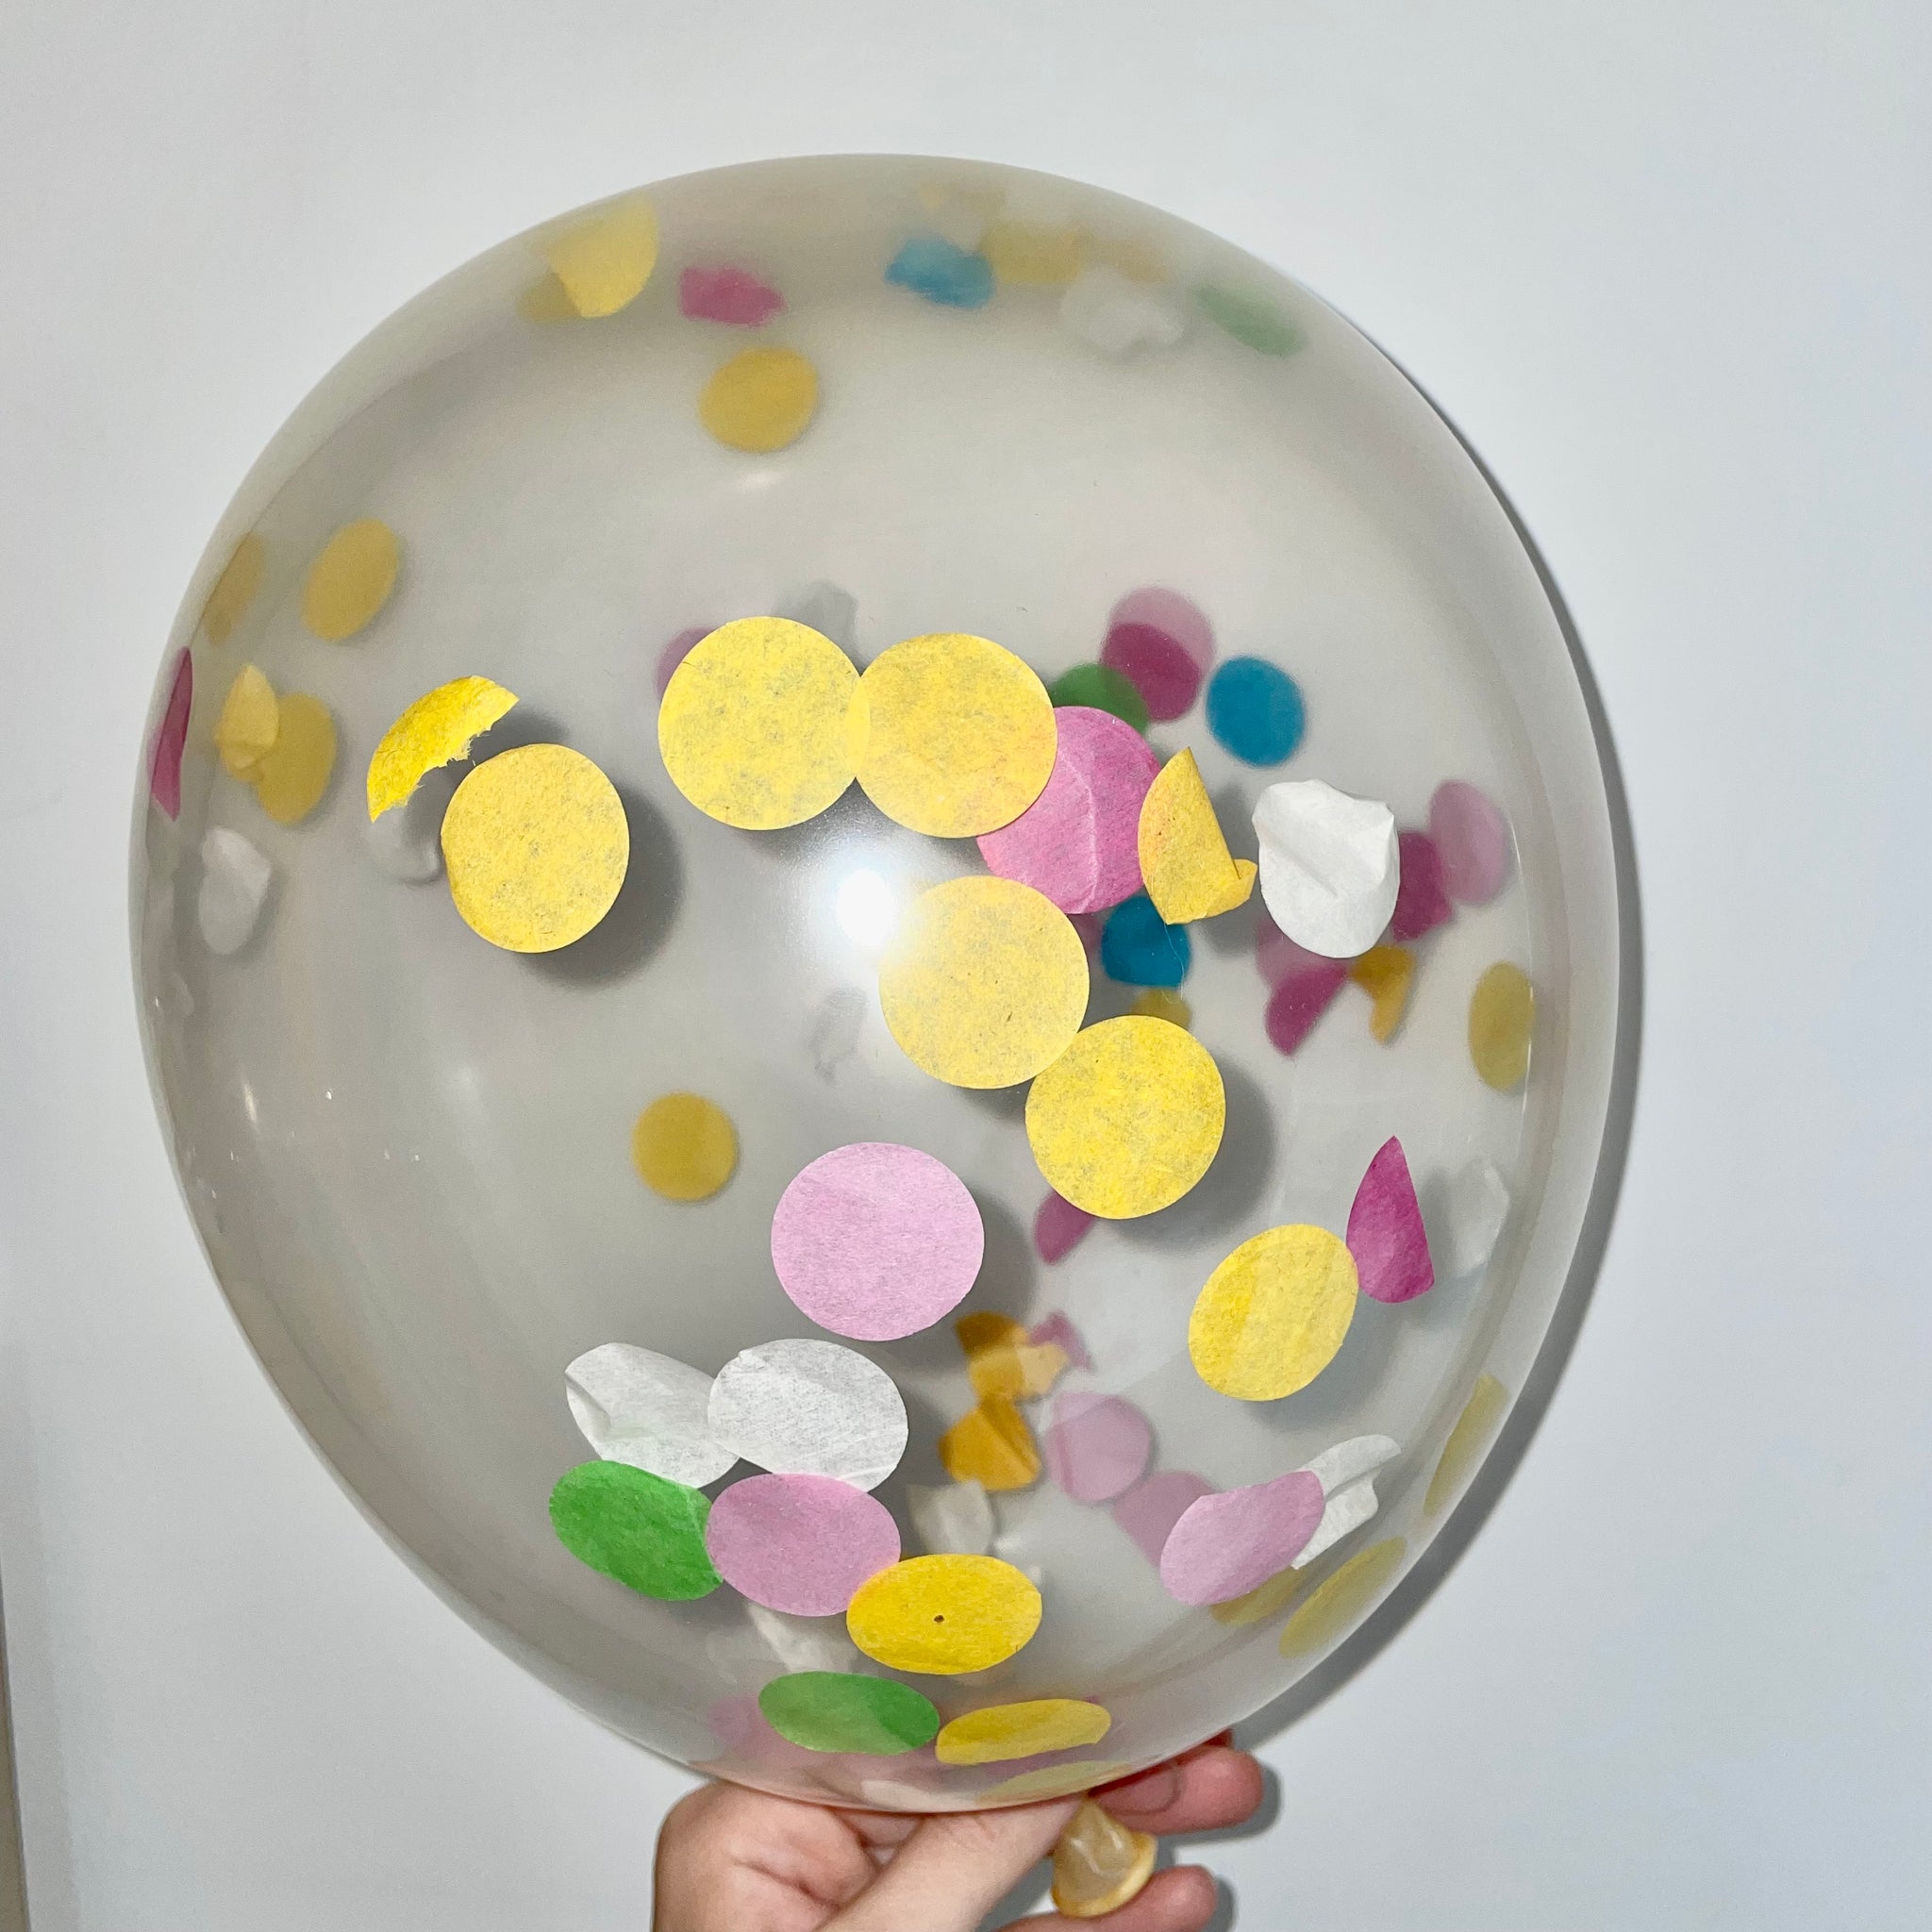 Grand sachet 100 ballons cristal 30 cm, incolore Transparent